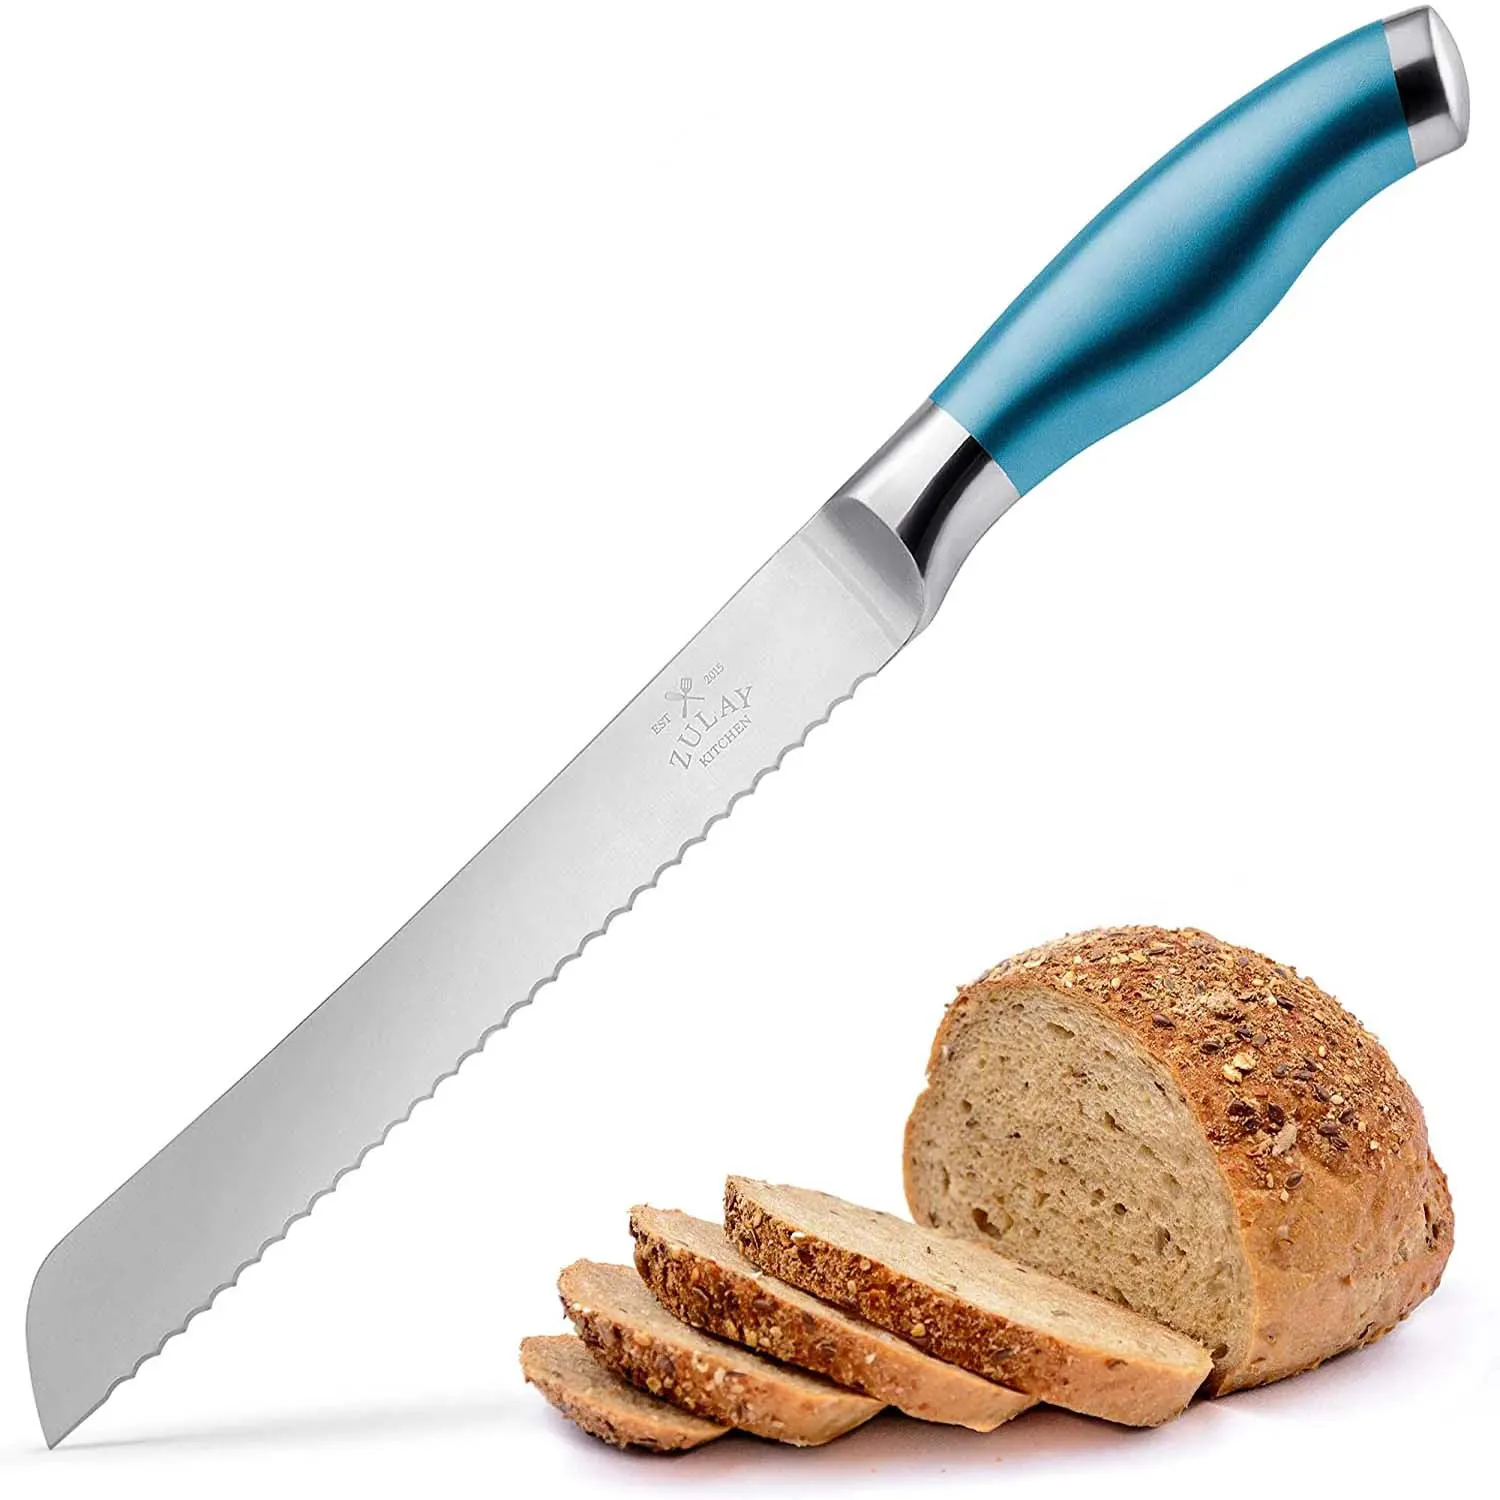 Bread Knife - 8 Inch